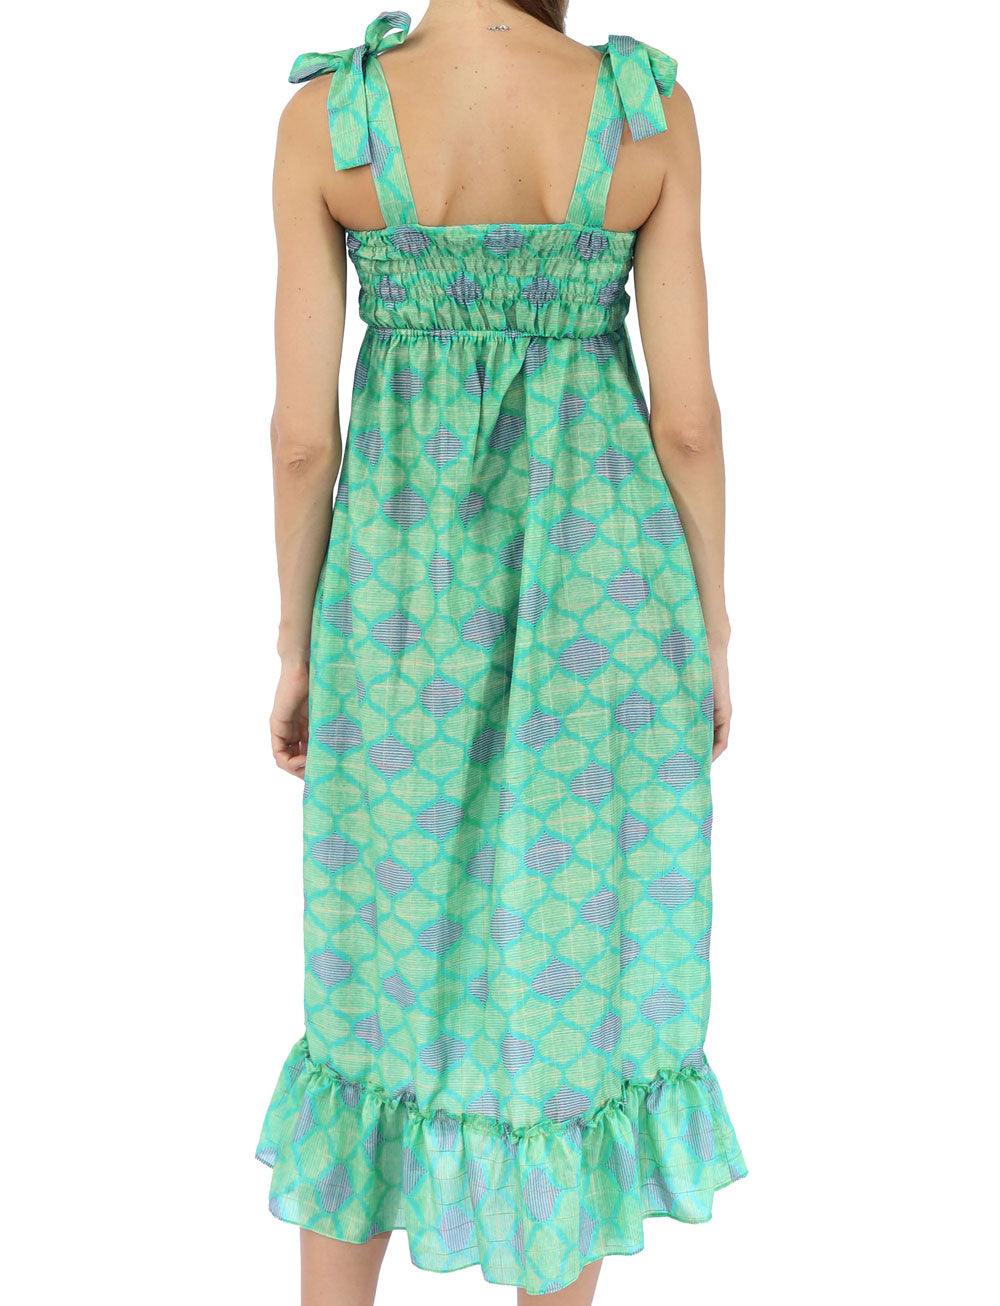 SHOULDER BOW DRESS IN GREEN IKAT DESIGN - Woman - Acqua Bonita